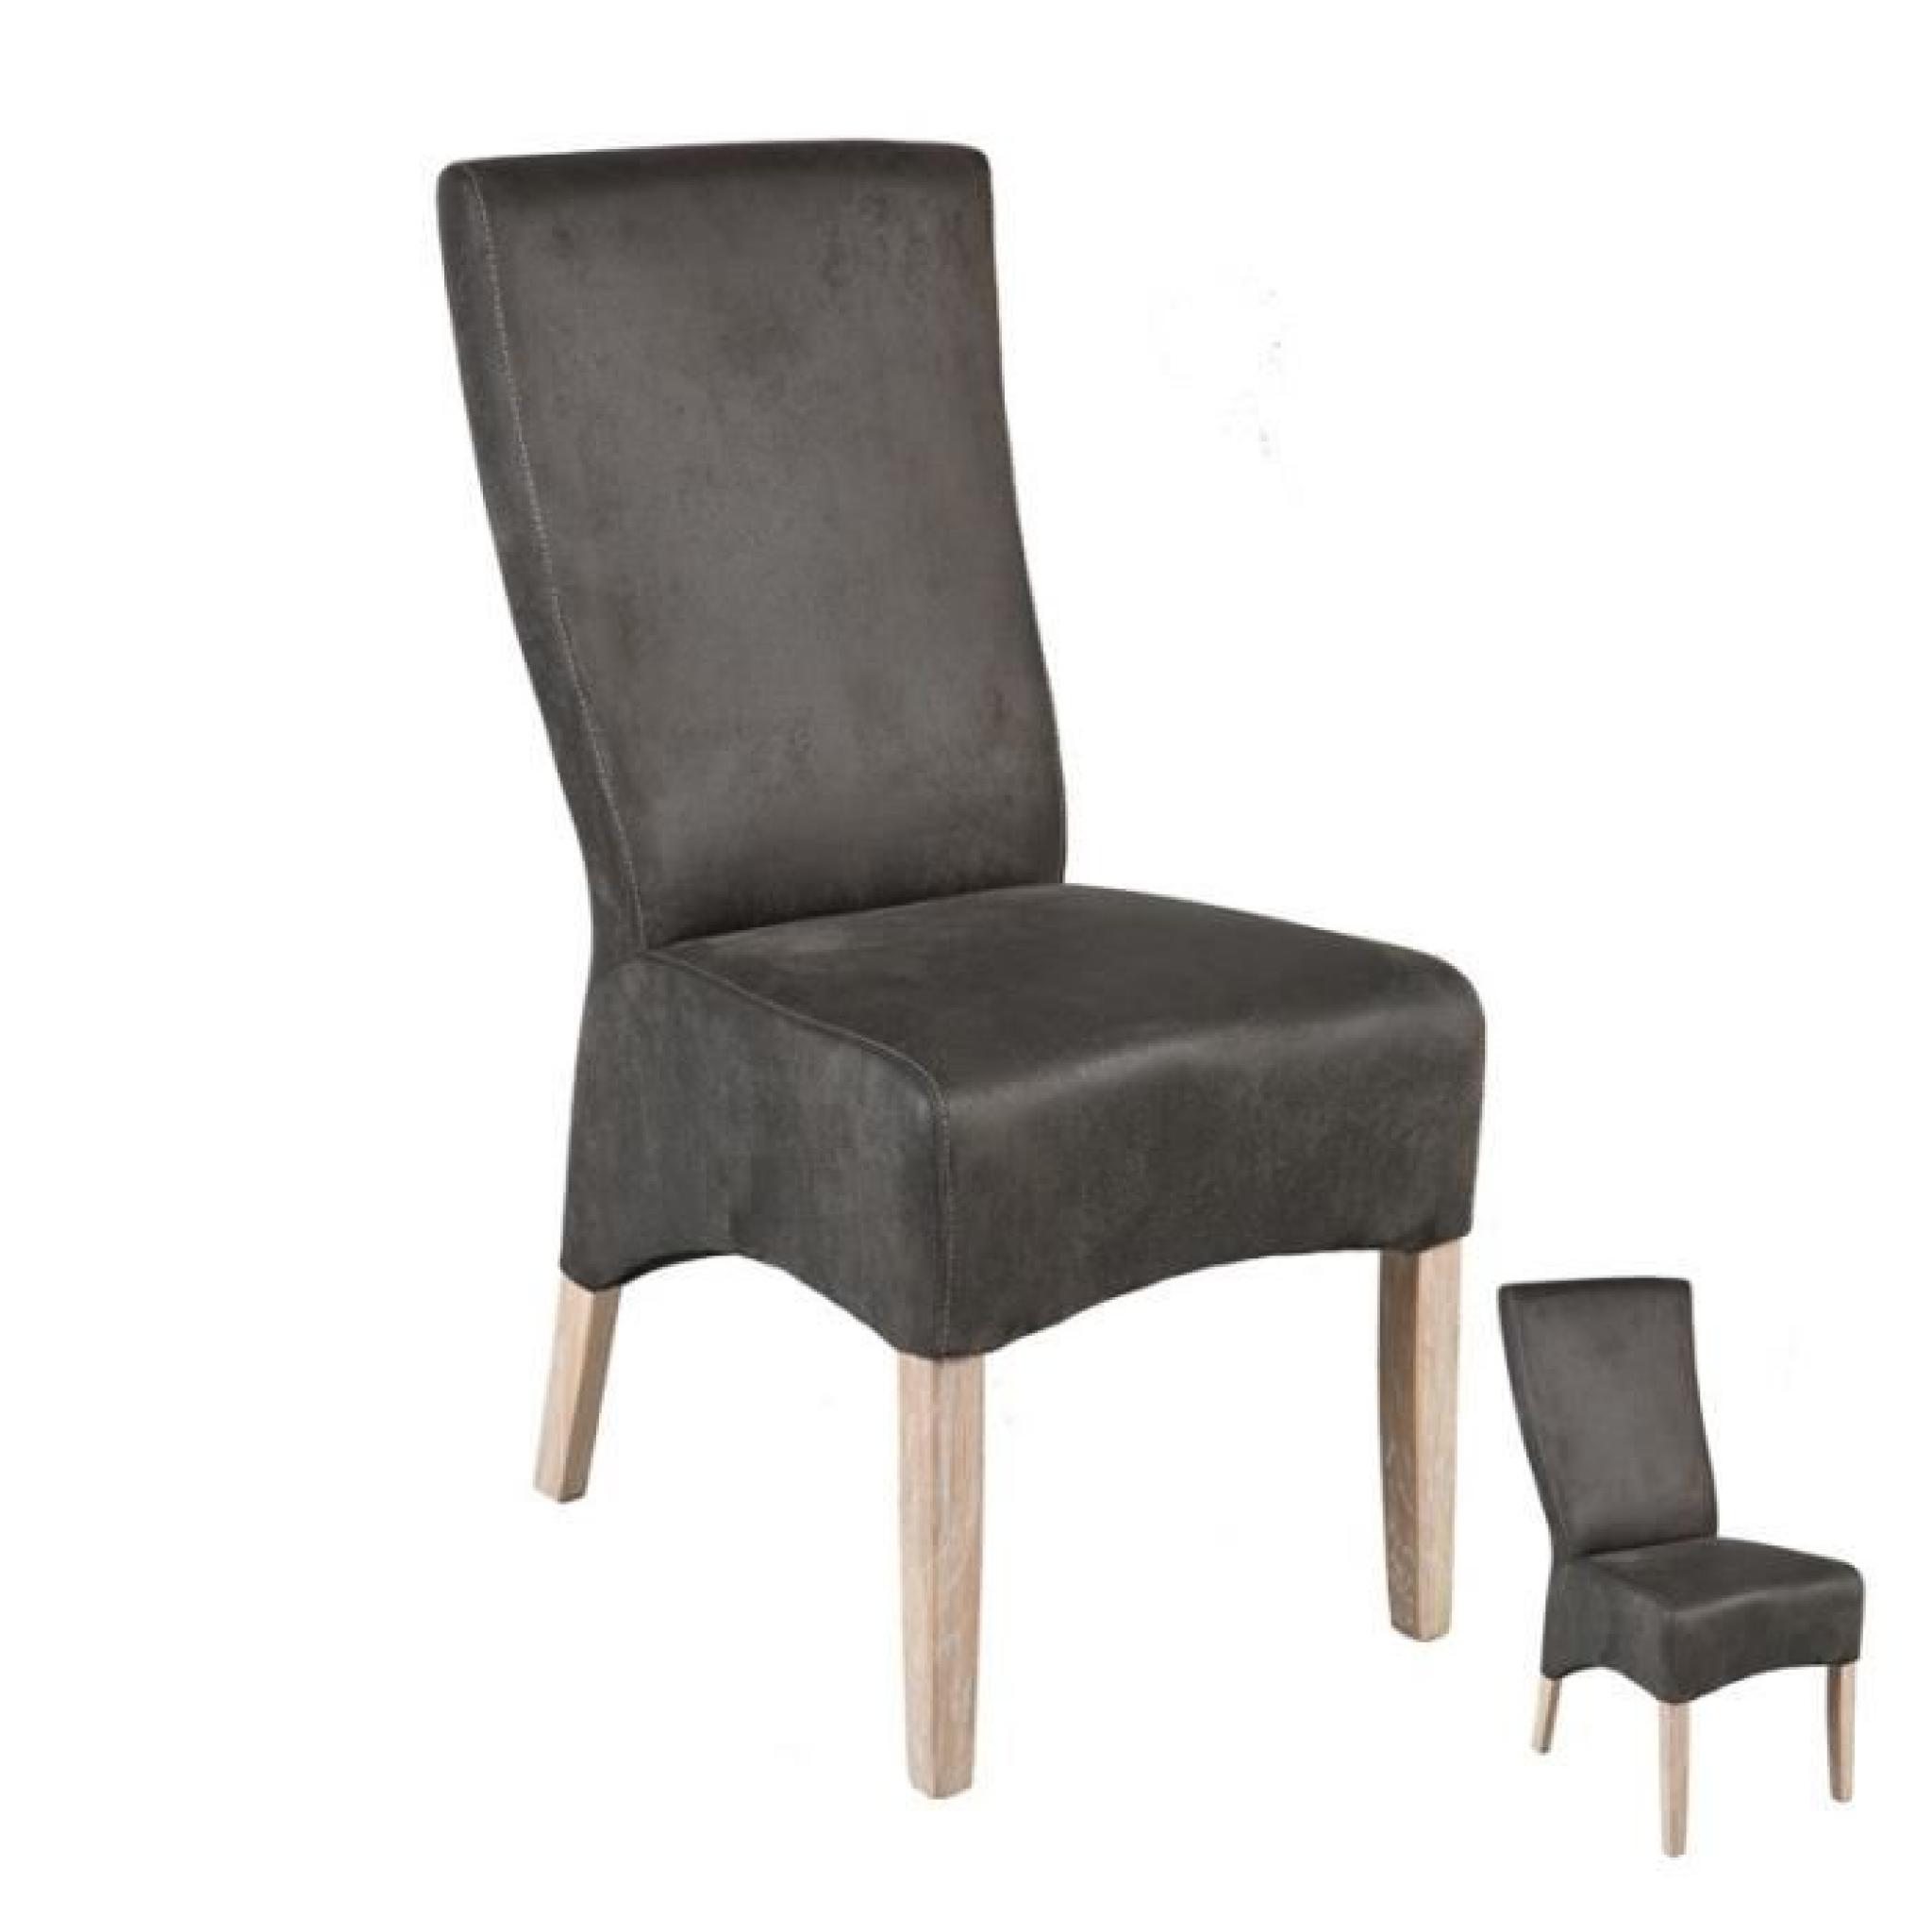 Duo de chaises Grises - NOE - L 44 x l 54 x H 101 cm